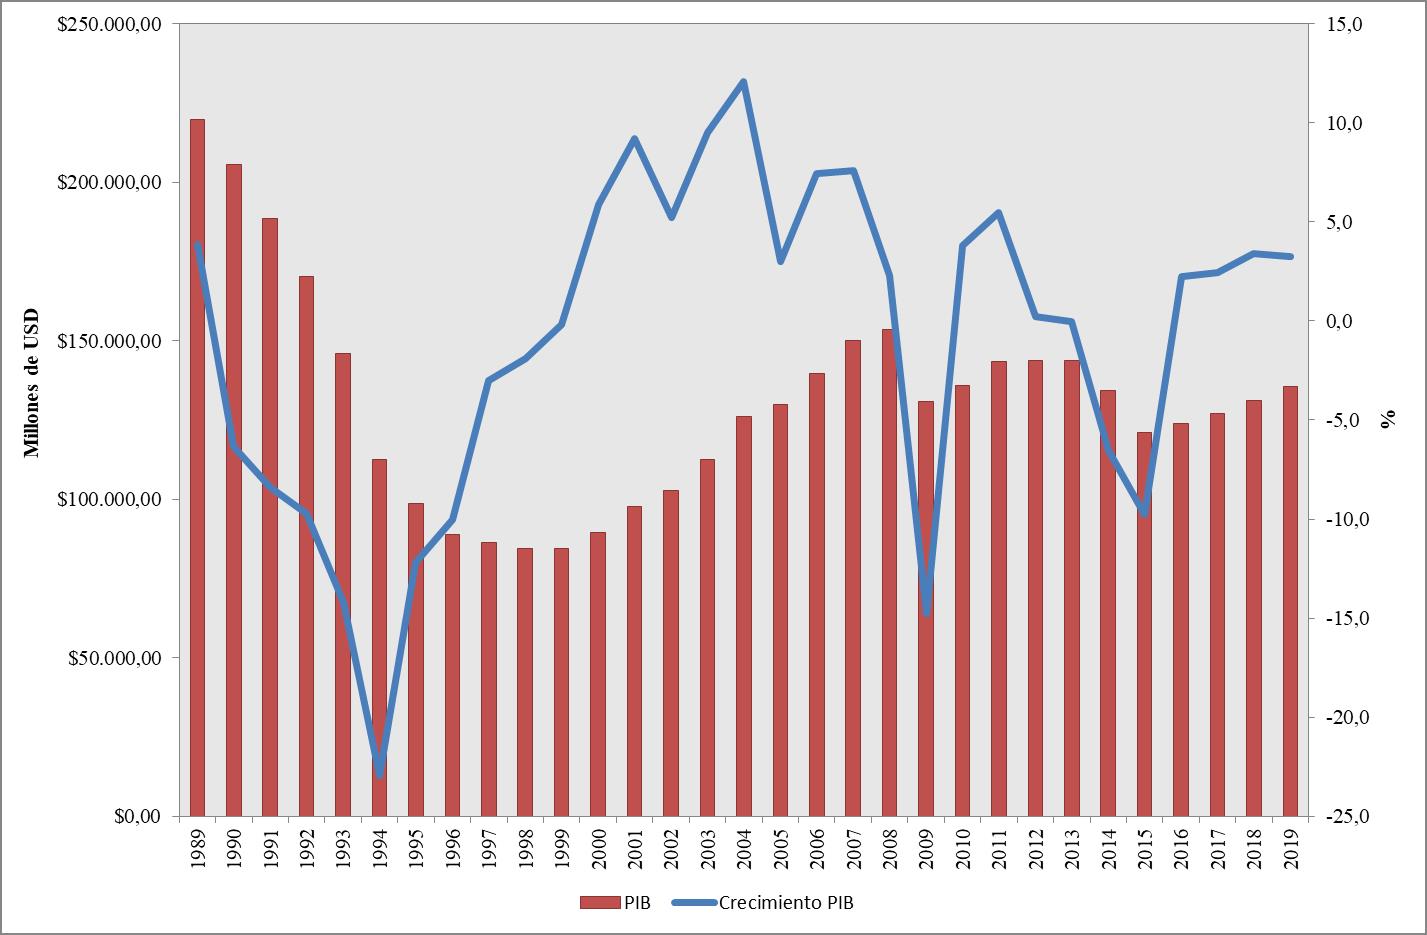 Figura 1.  Ucrania, Producto Interno Bruto y tasa de crecimiento. 1989-2019